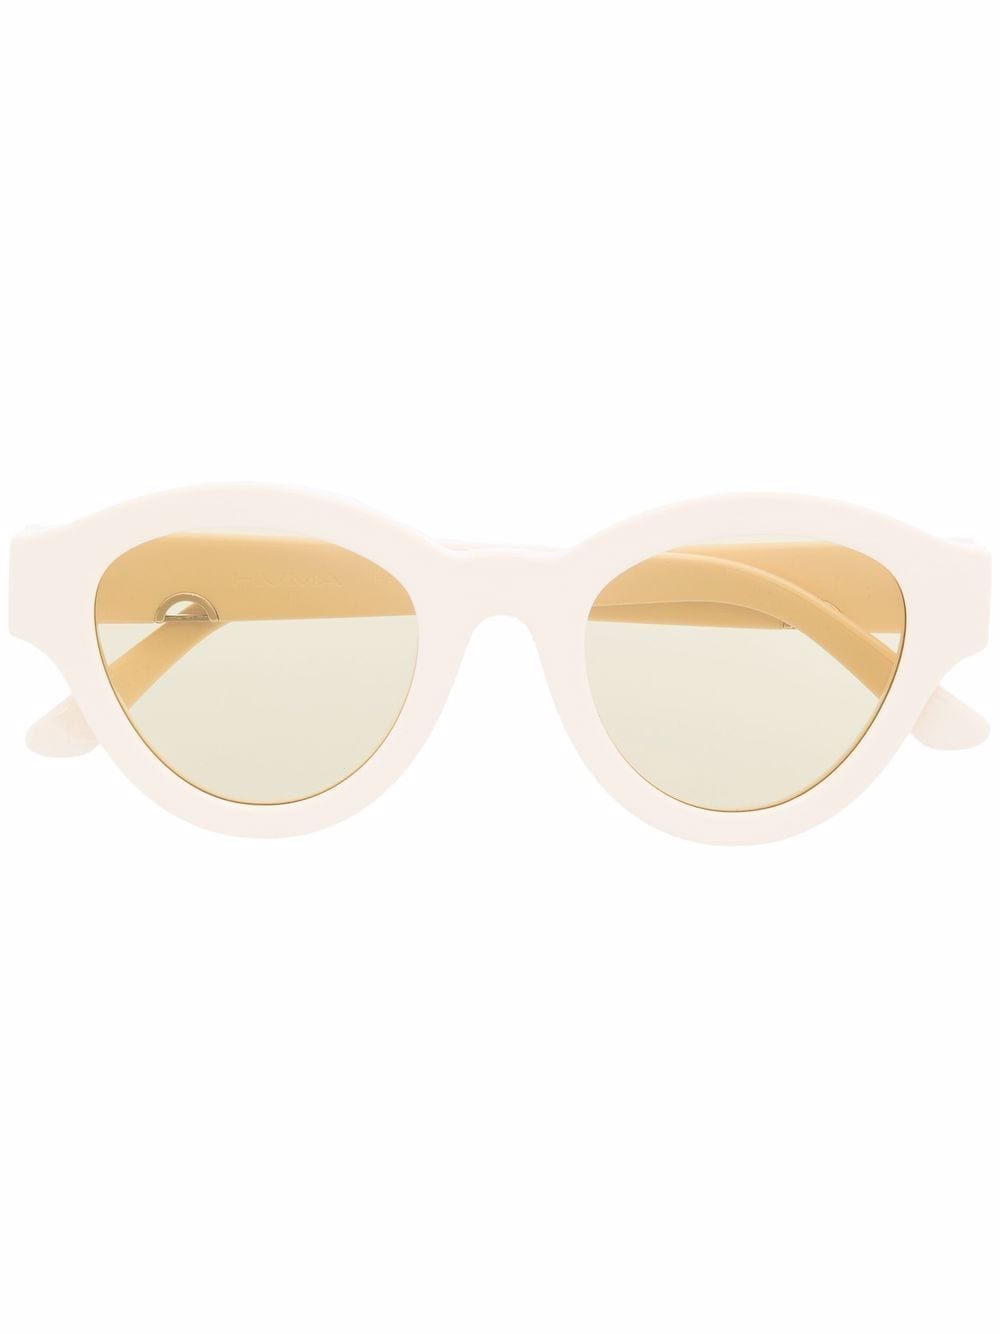 HUMA EYEWEAR Dug round frame sunglasses - Neutrals von HUMA EYEWEAR